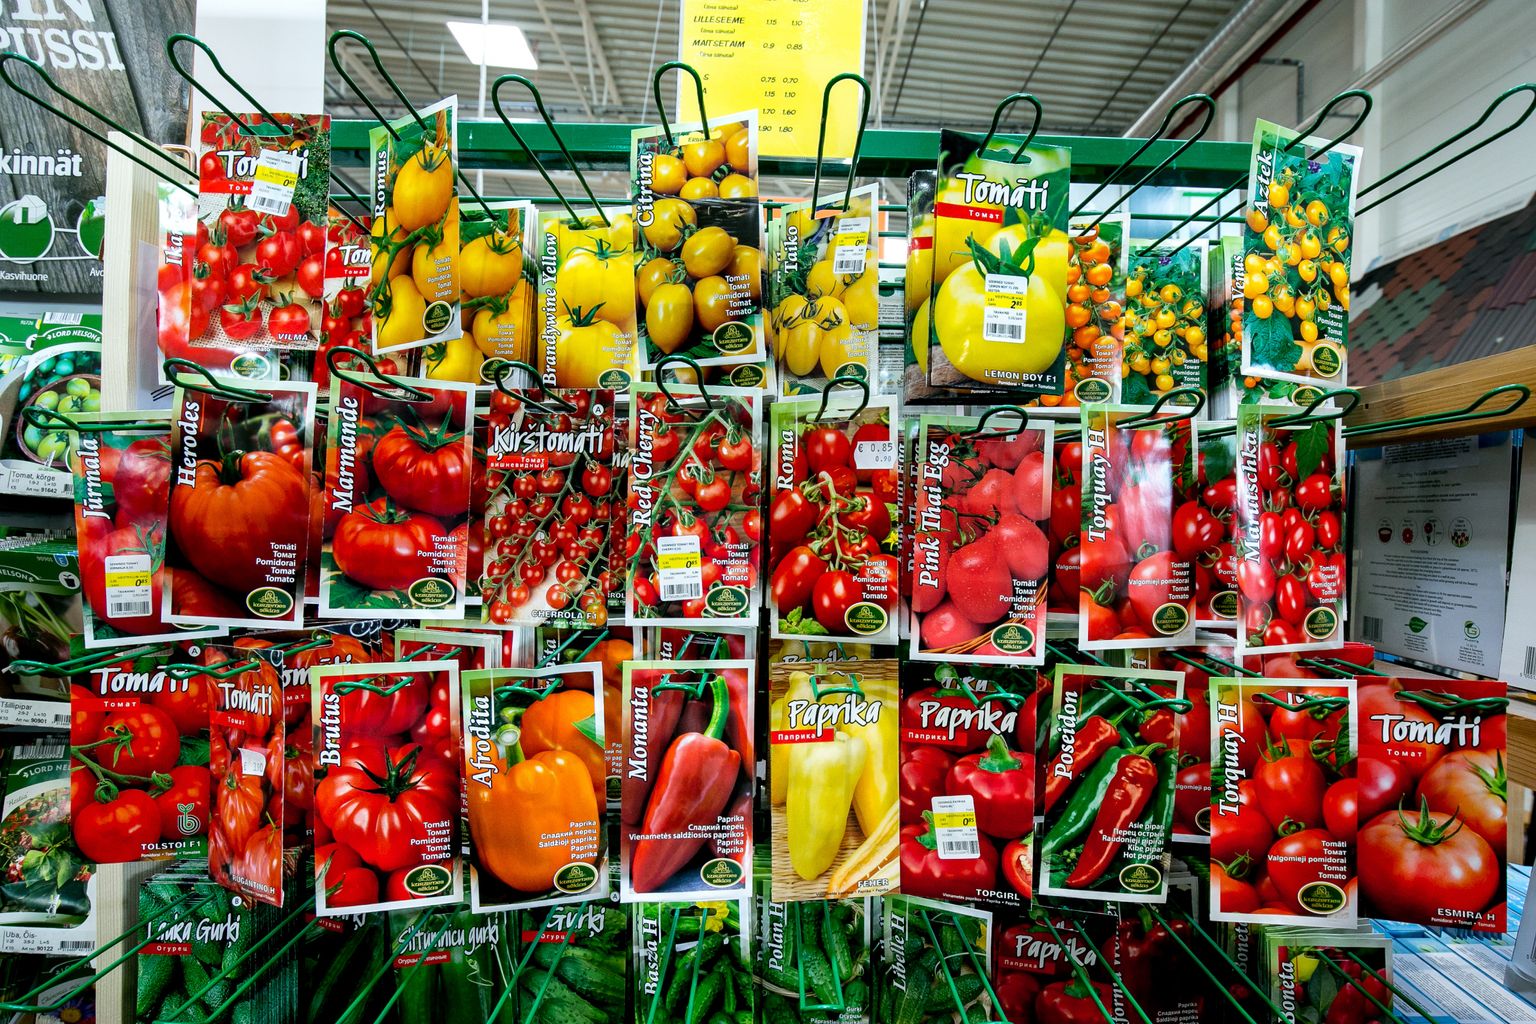 Venemaa tomatisorte on Eestis ammusest ajast kasvatatud ja väga hinnatud, kuid neid praegu tuua ei saa.